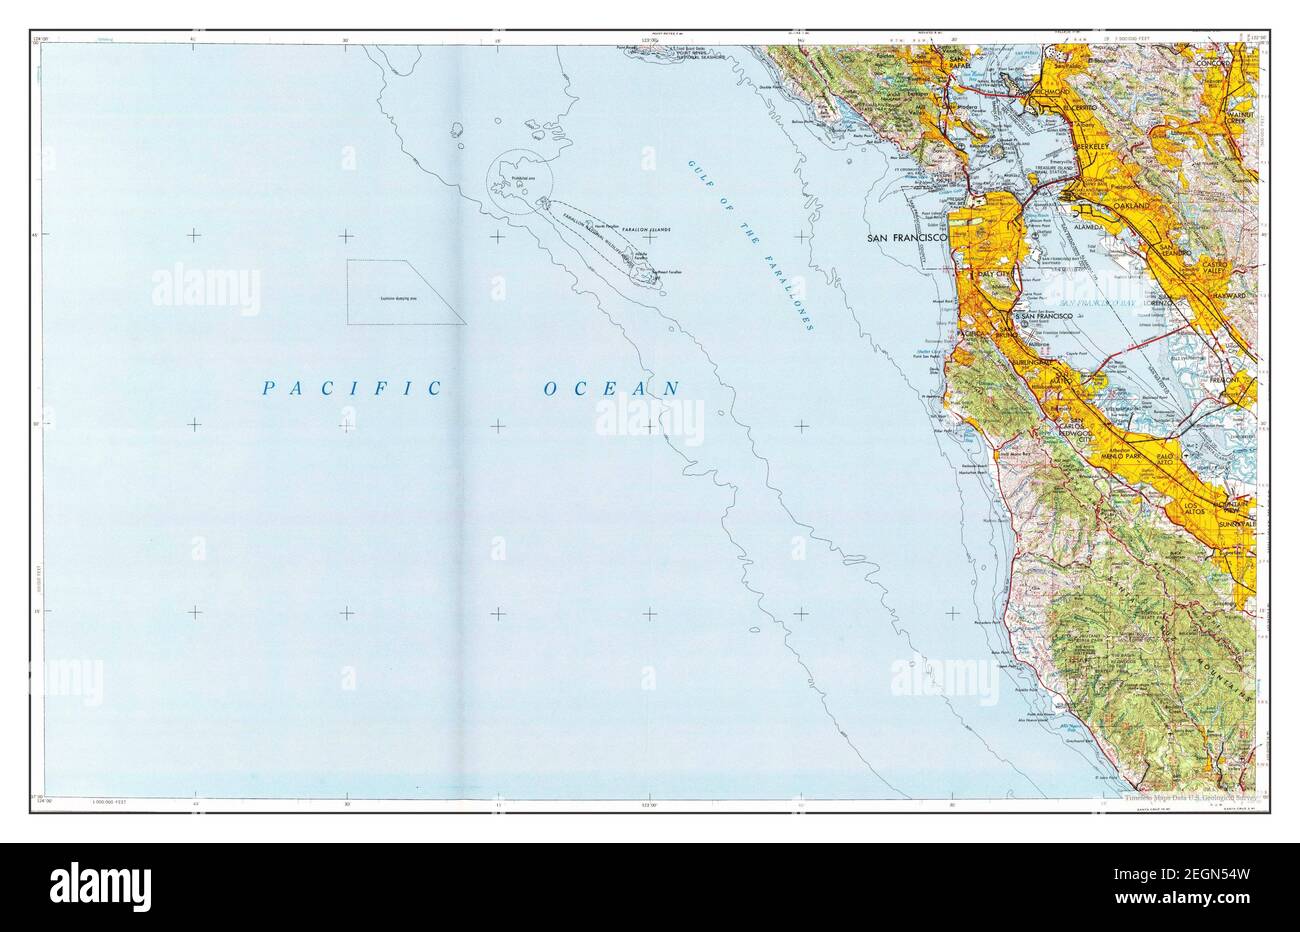 San Francisco, California, Karte 1956, 1:250000, Vereinigte Staaten von Amerika von Timeless Maps, Daten U.S. Geological Survey Stockfoto